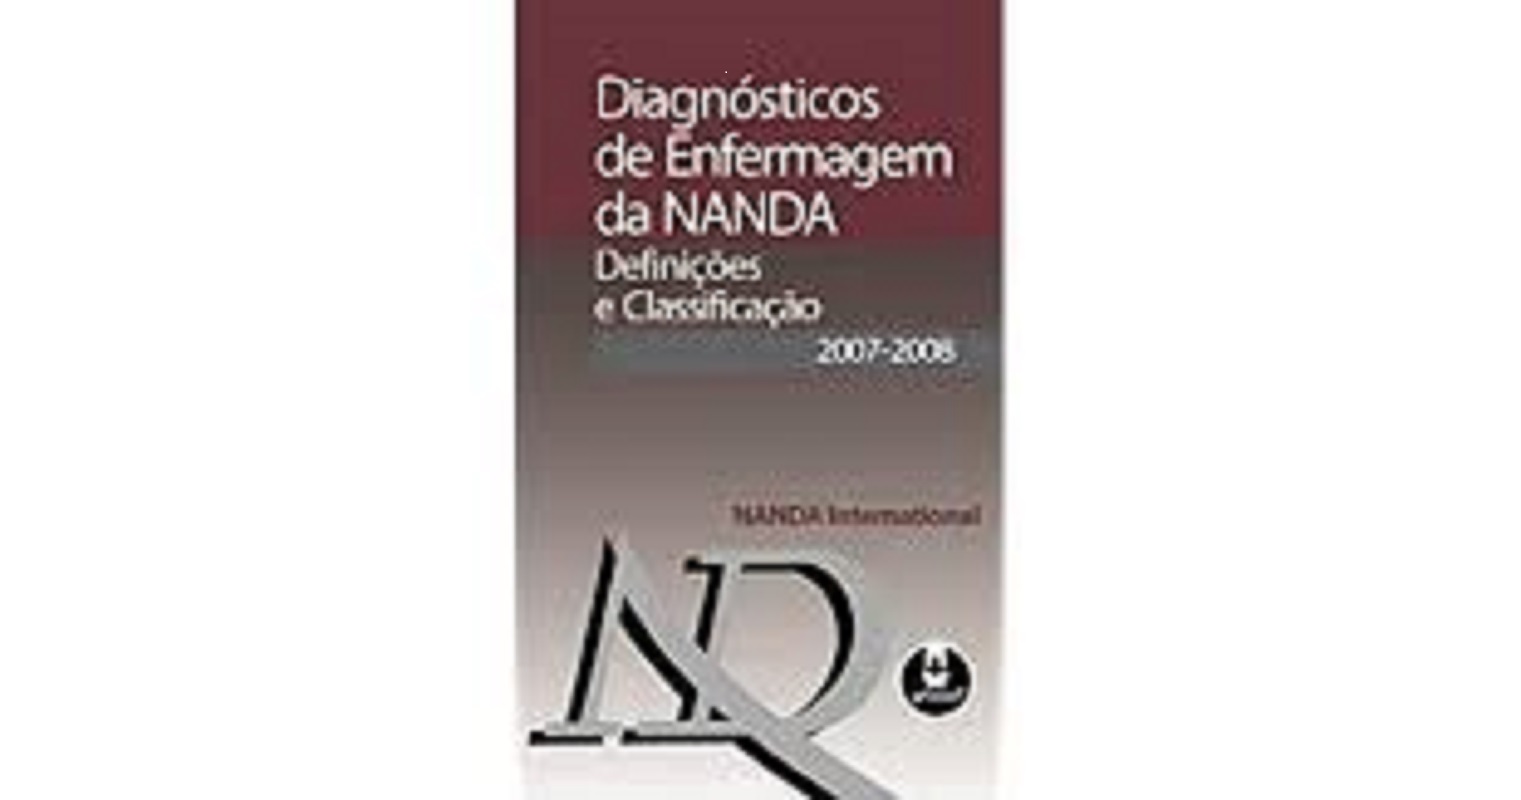 Diagnósticos de Enfermagem da NANDA: Definições e Classificação 2007-2008